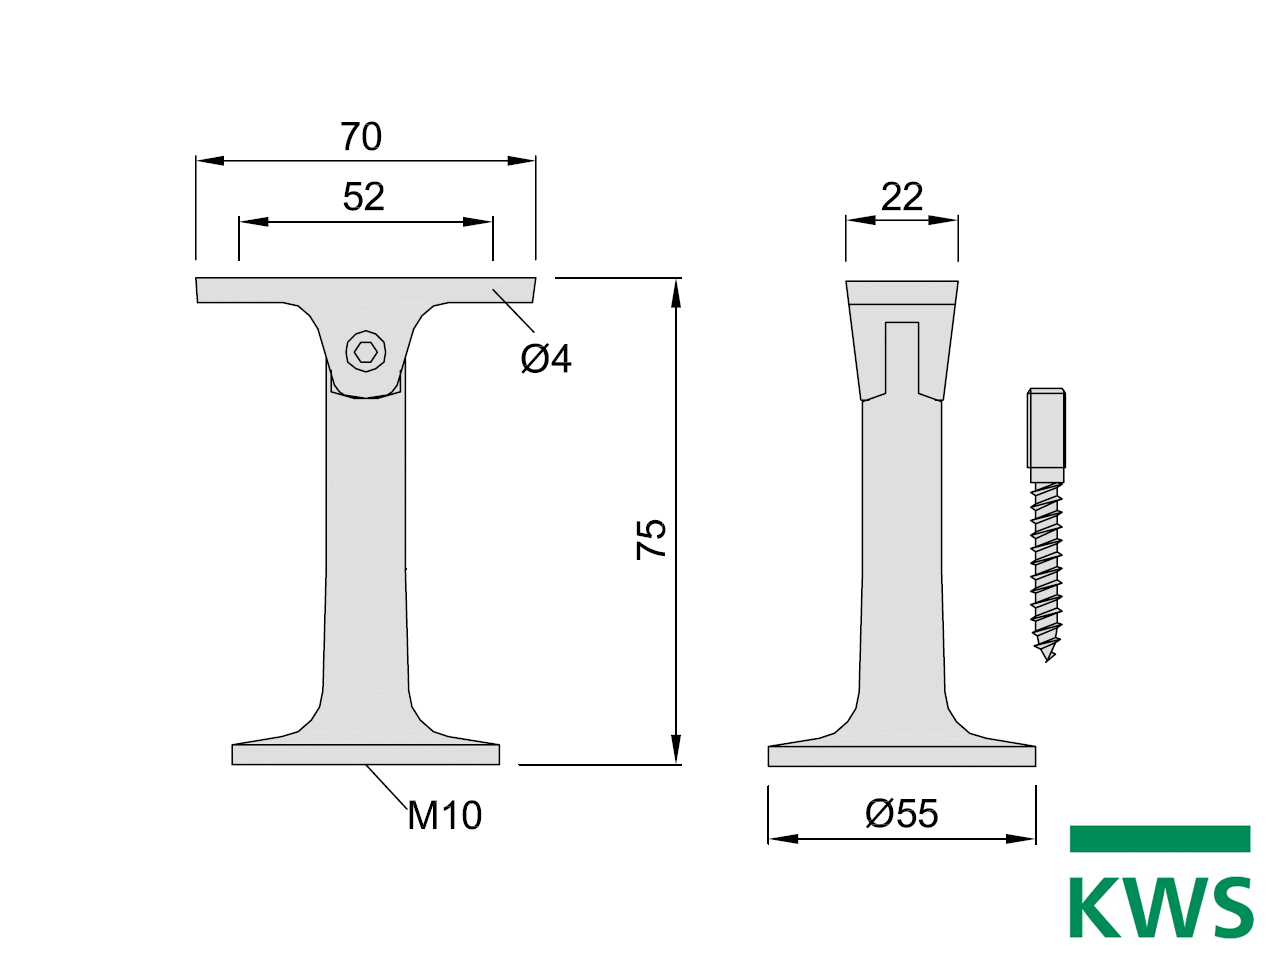 KWS 4591 Handlaufstütze - 75 mm Abstand